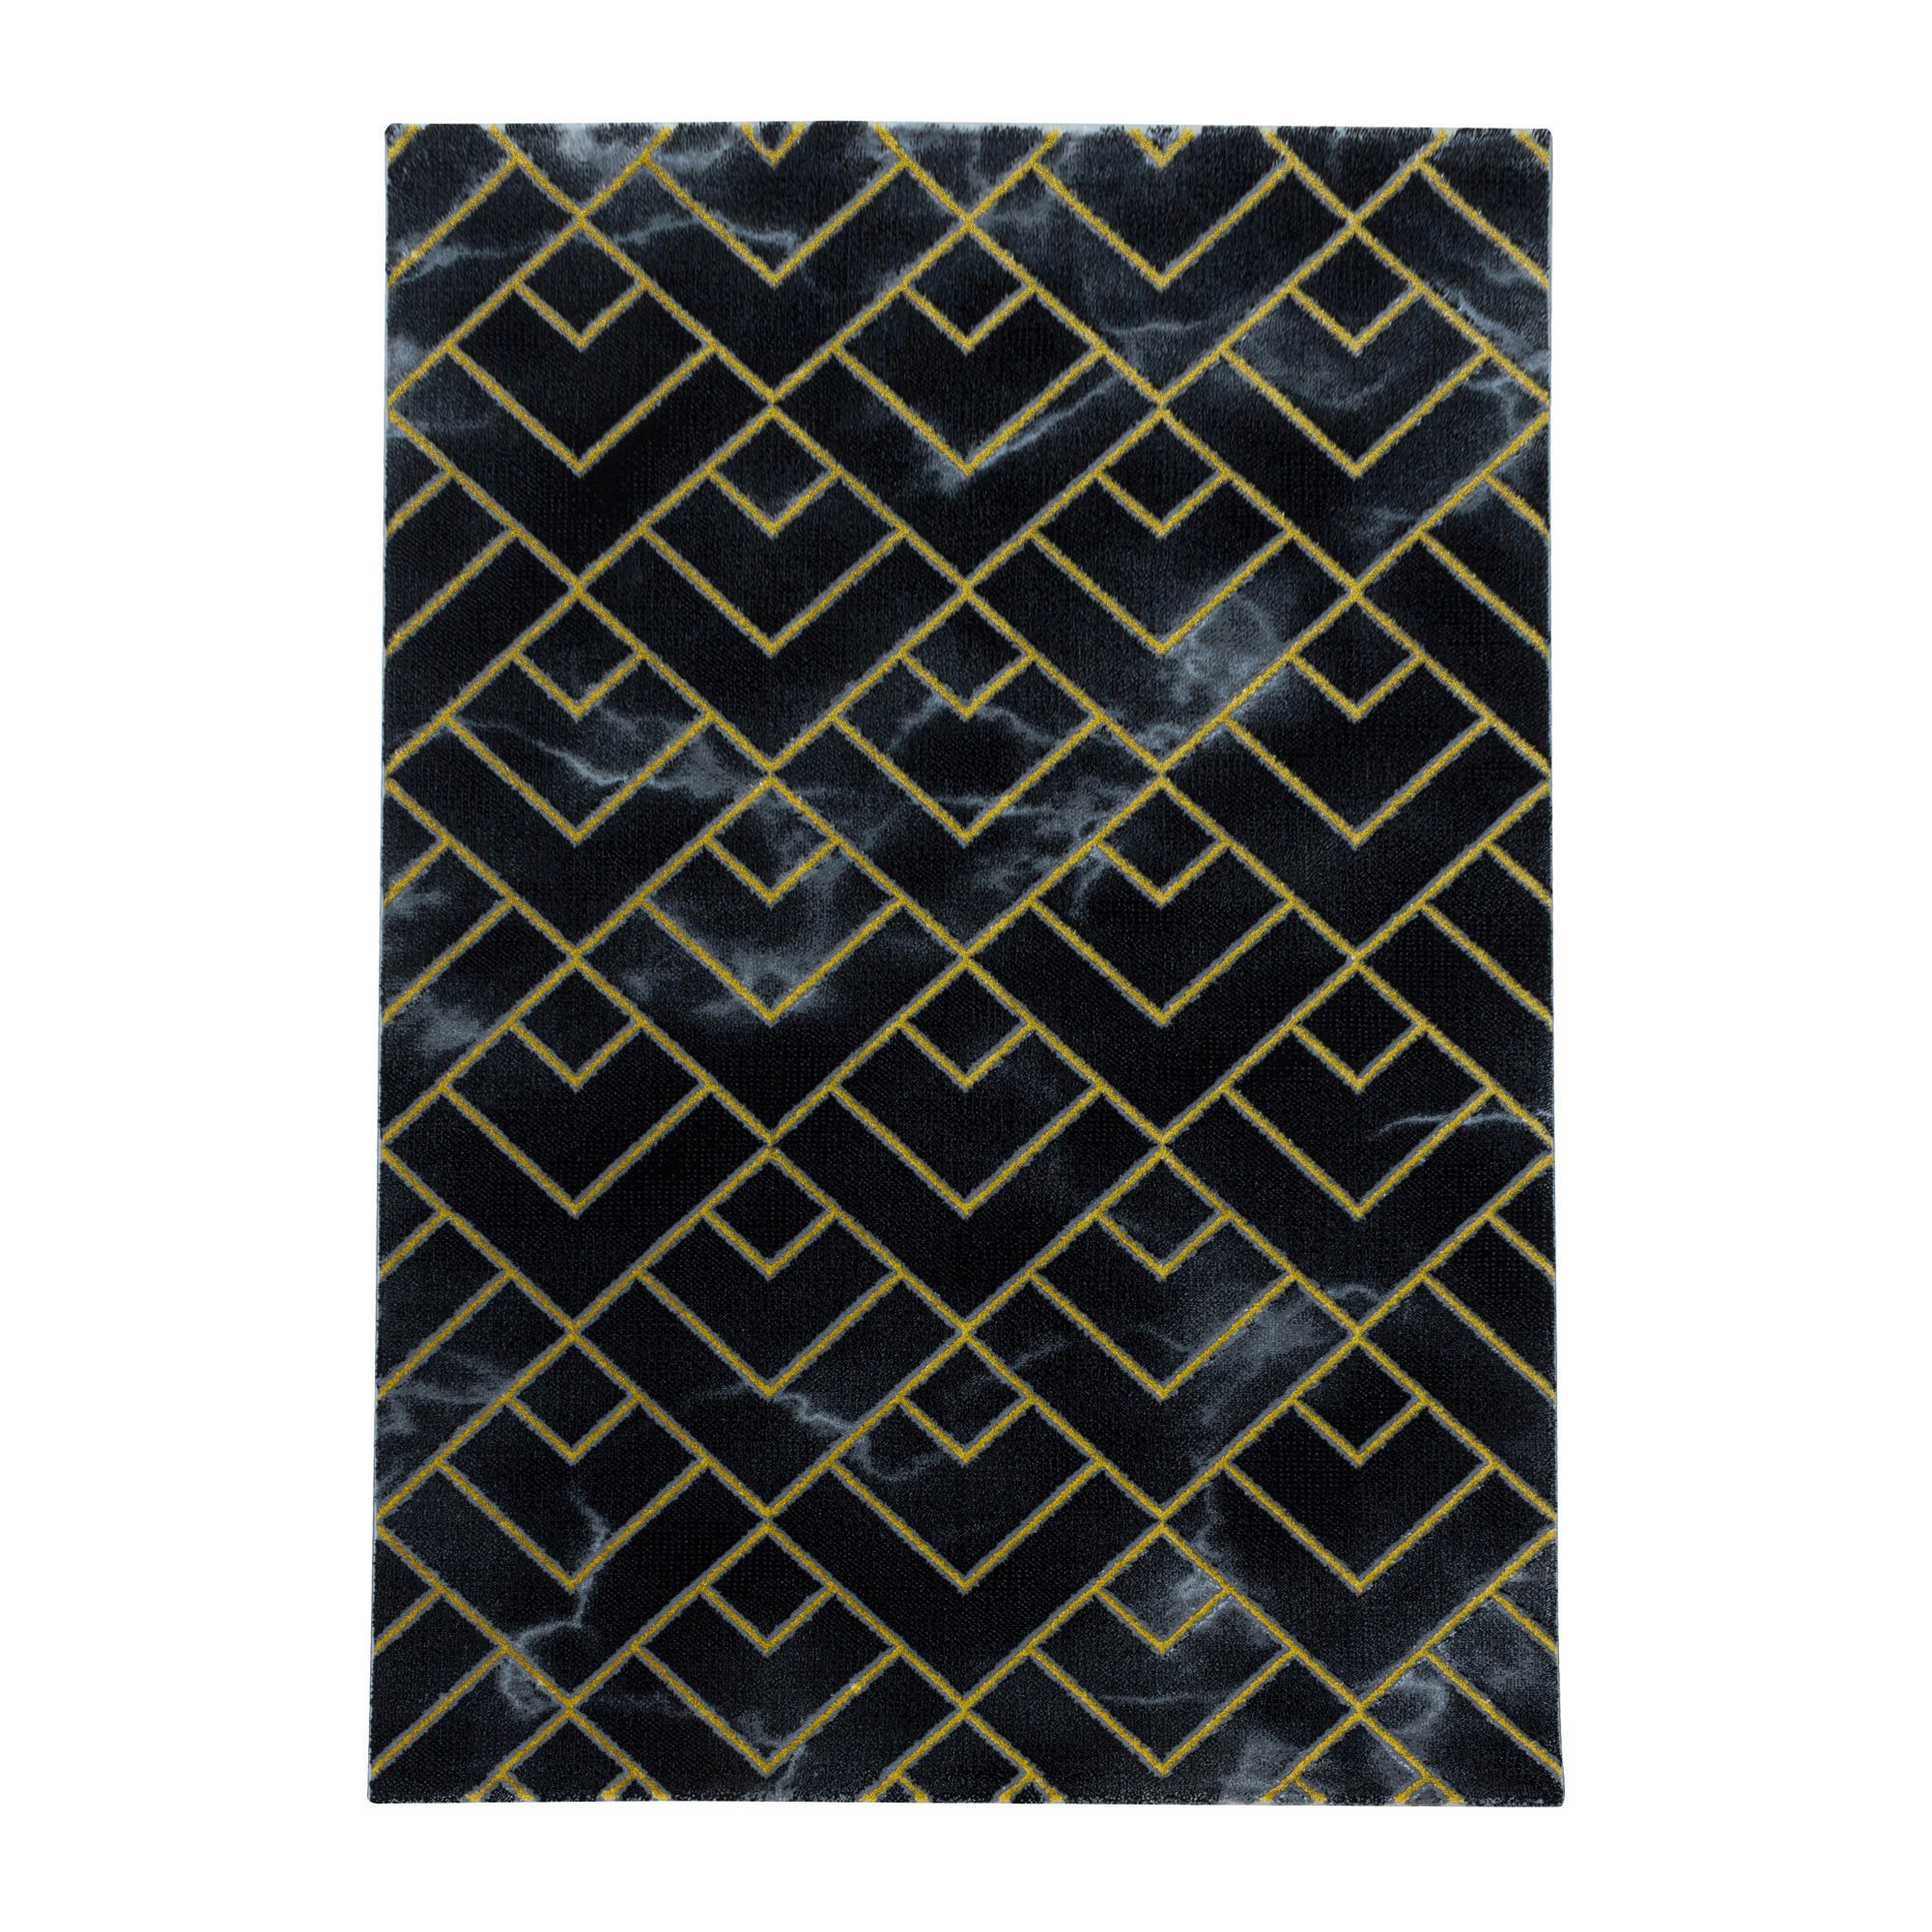 WEBTEPPICH  200/290 cm  Goldfarben   - Goldfarben, Design, Textil (200/290cm) - Novel